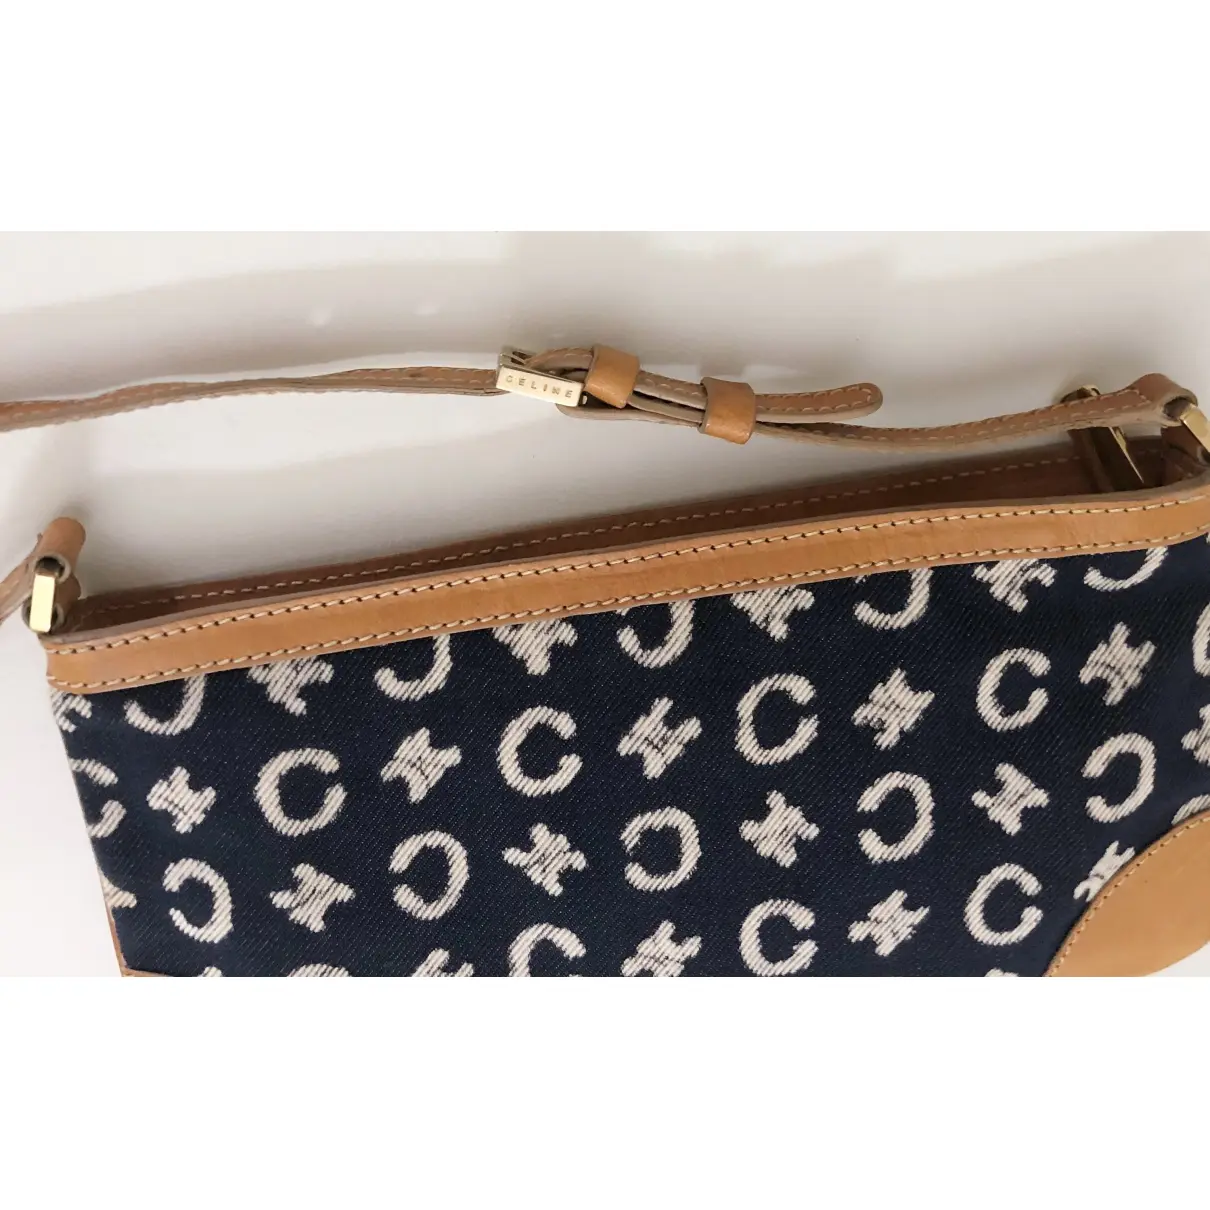 Buy Celine Triomphe Vintage cloth handbag online